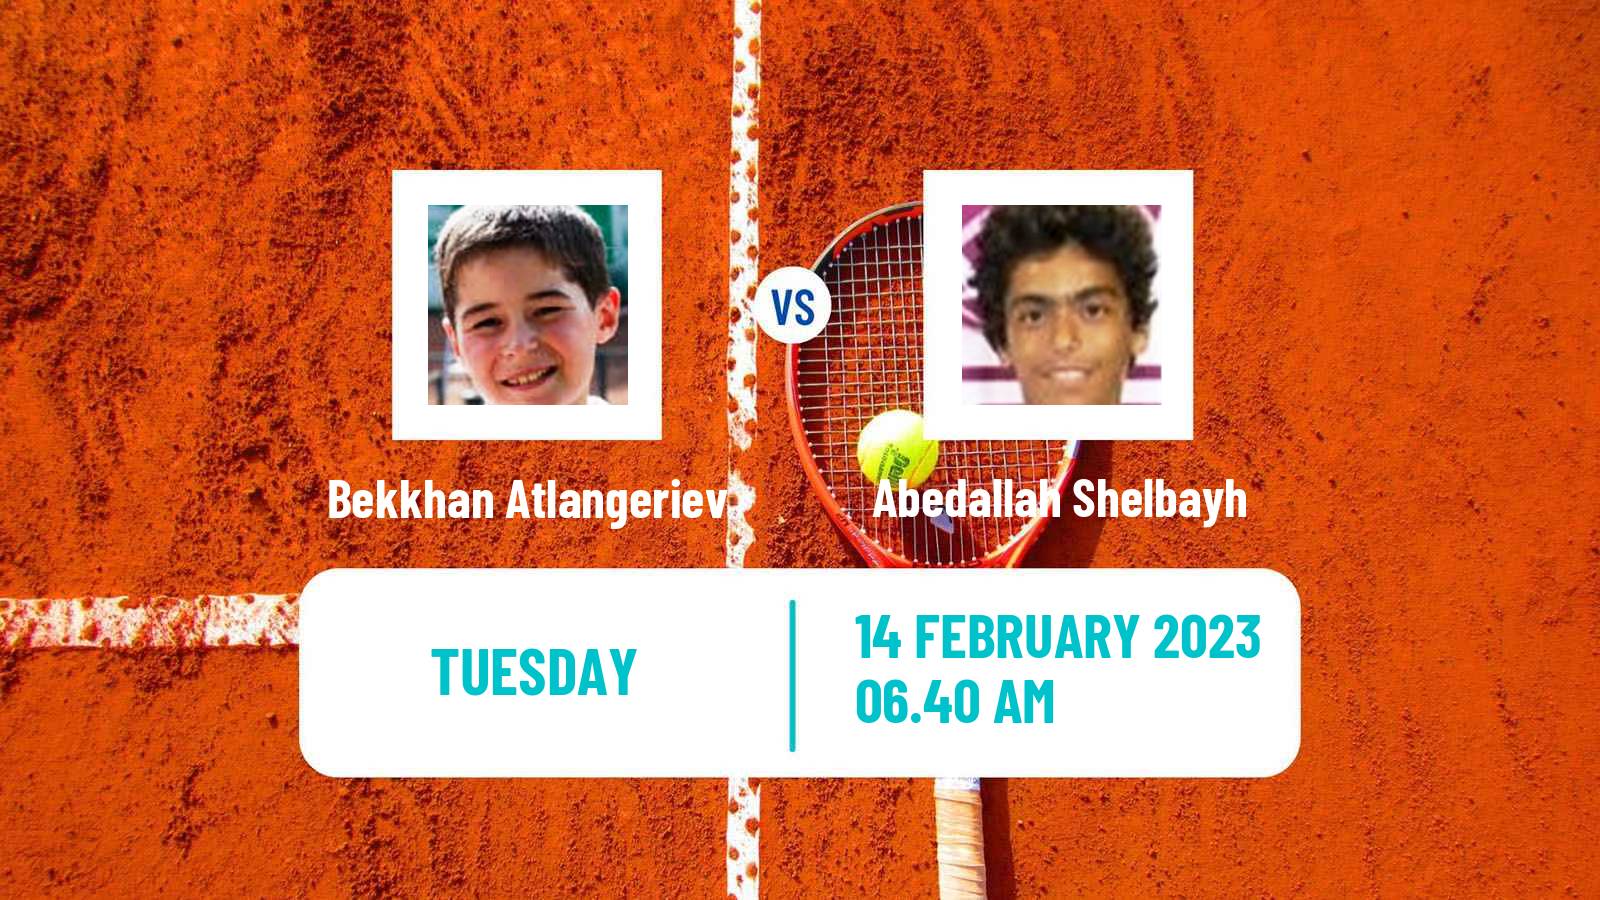 Tennis ATP Challenger Bekkhan Atlangeriev - Abedallah Shelbayh